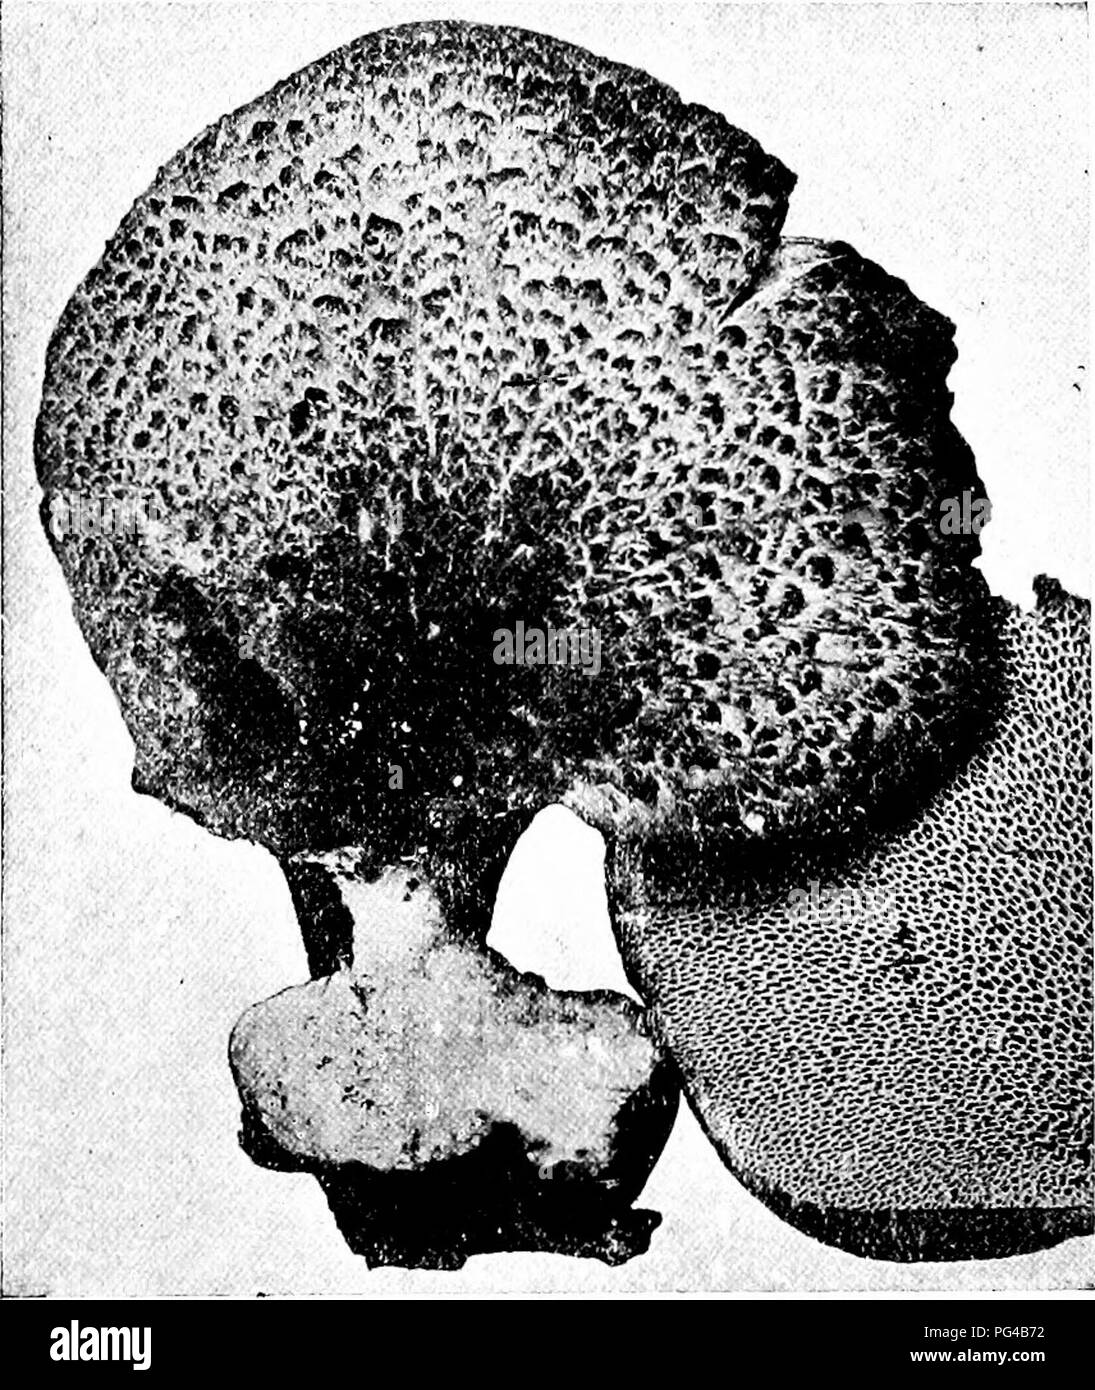 . Minnesota Pilzen... Botanik; Pilze. PORE PILZE 97 Polyporus umbellatus Trichter Büschel Caps 1-4 cm breit, in dichten Büscheln 15-20 cm breit, rauchig, gelblich oder rötlich, glatte, harte, fleischigen, regelmäßige, mehr oder weniger deprimiert und Trichter-Form; Stiele 1 - 3 X/2-2 cm., oft Forking an der Oberseite, trat in eine dichte Masse an der Hase; Poren kleine, weiße. Der Name bezieht sich auf den Regenschirm - wie Tops. Auf morschem Holz und Stümpfe, gut gewürzt. Polyporus frondosus Ventilator Büschel Caps 1-5 cm breit, Büschel, 15-30 cm breit, grau zu rauchig, zerknittert oder glatten, festen, fleischigen, fächerförmigen, Gelappt und verschieden unregelmäßig; s Stockfoto